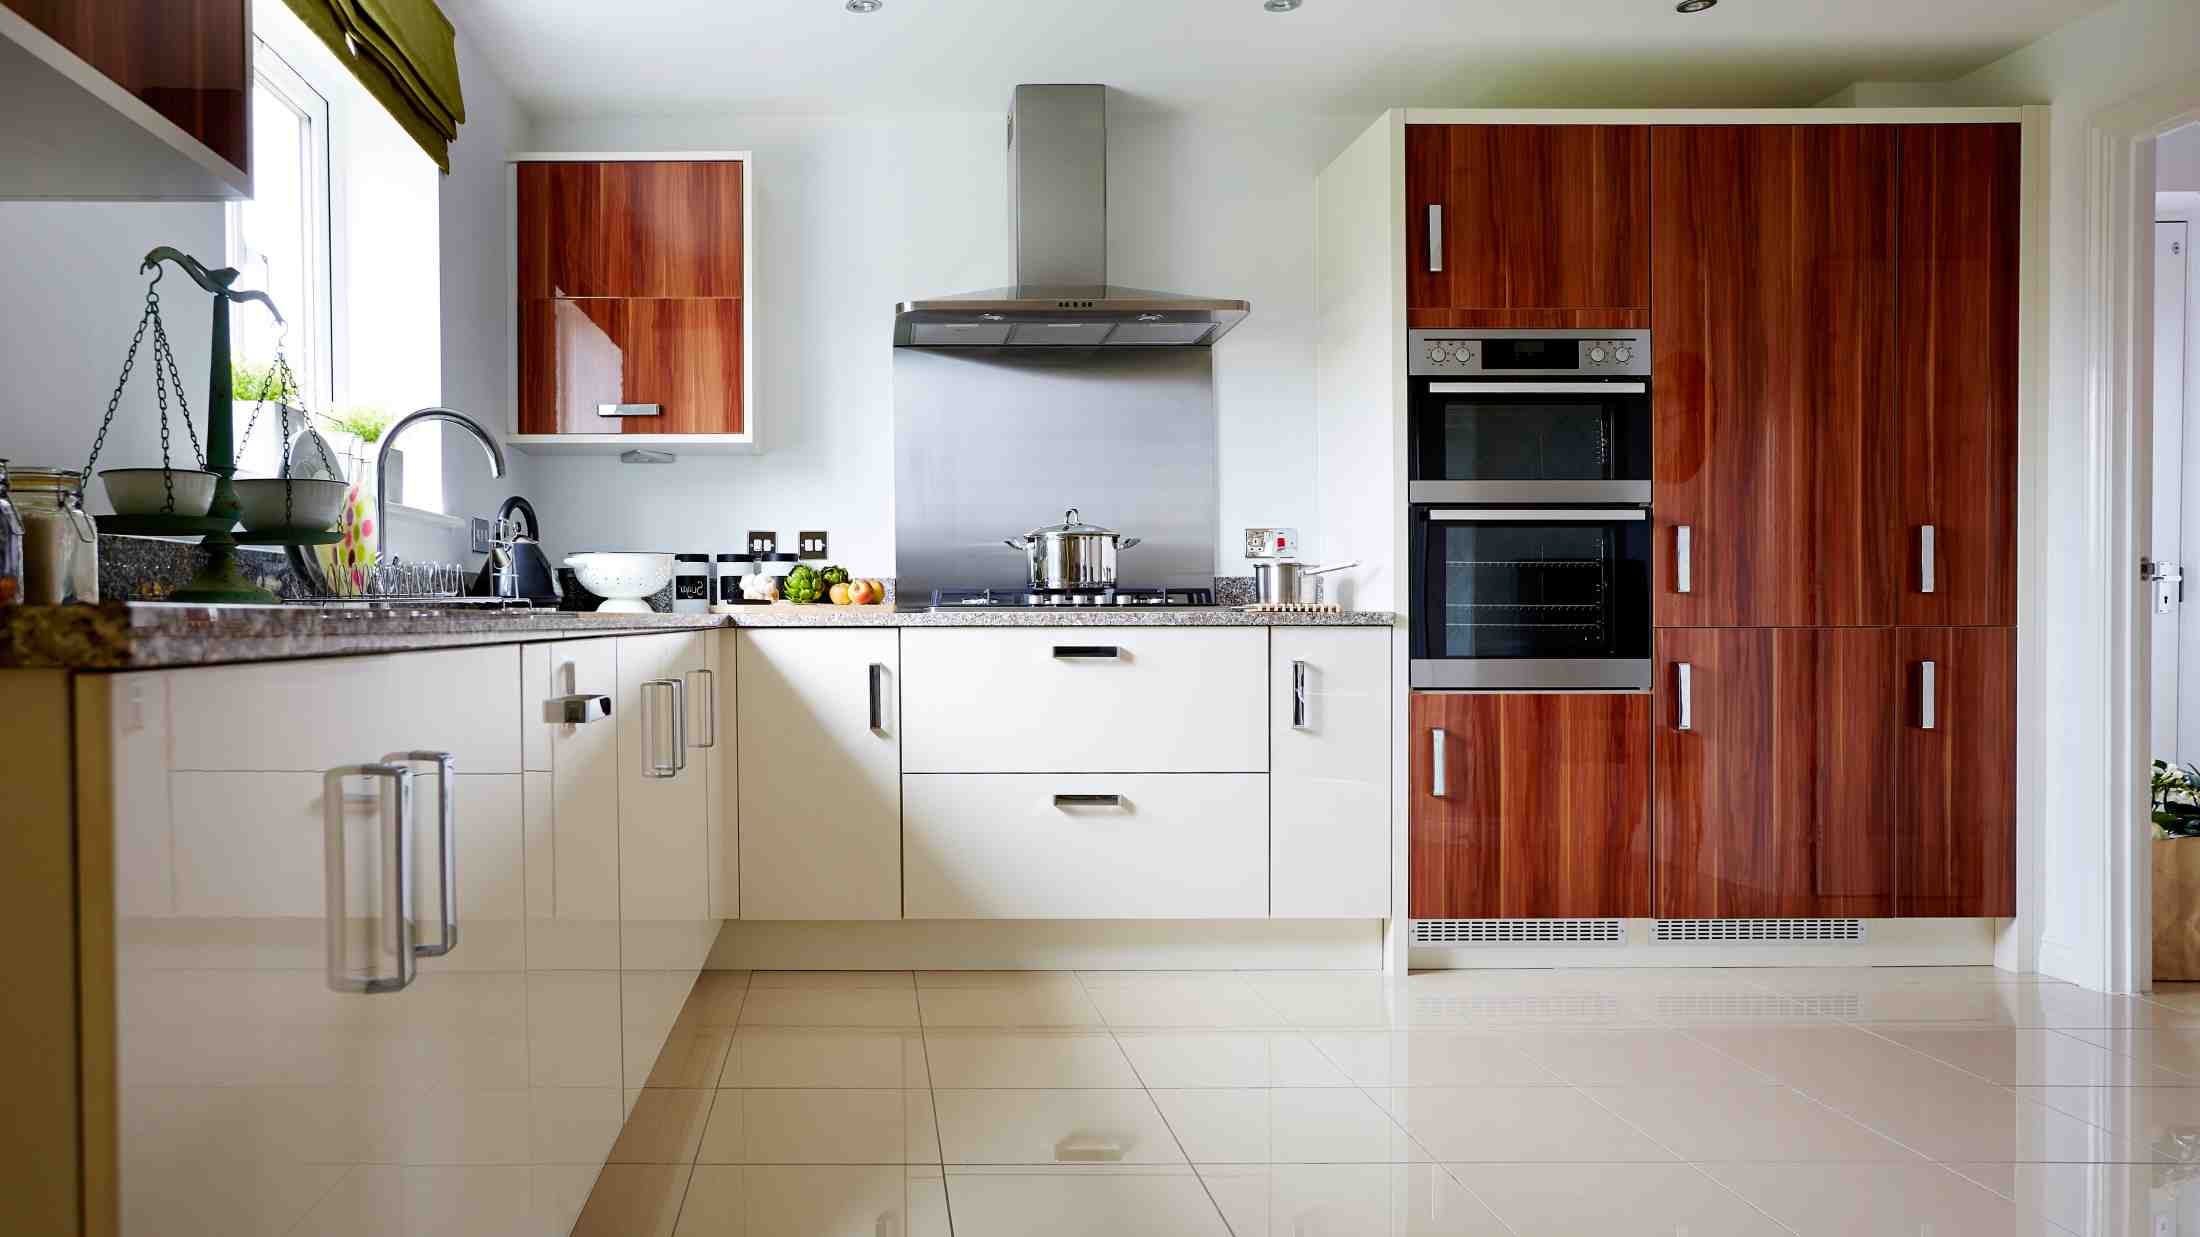 Modern open plan kitchen